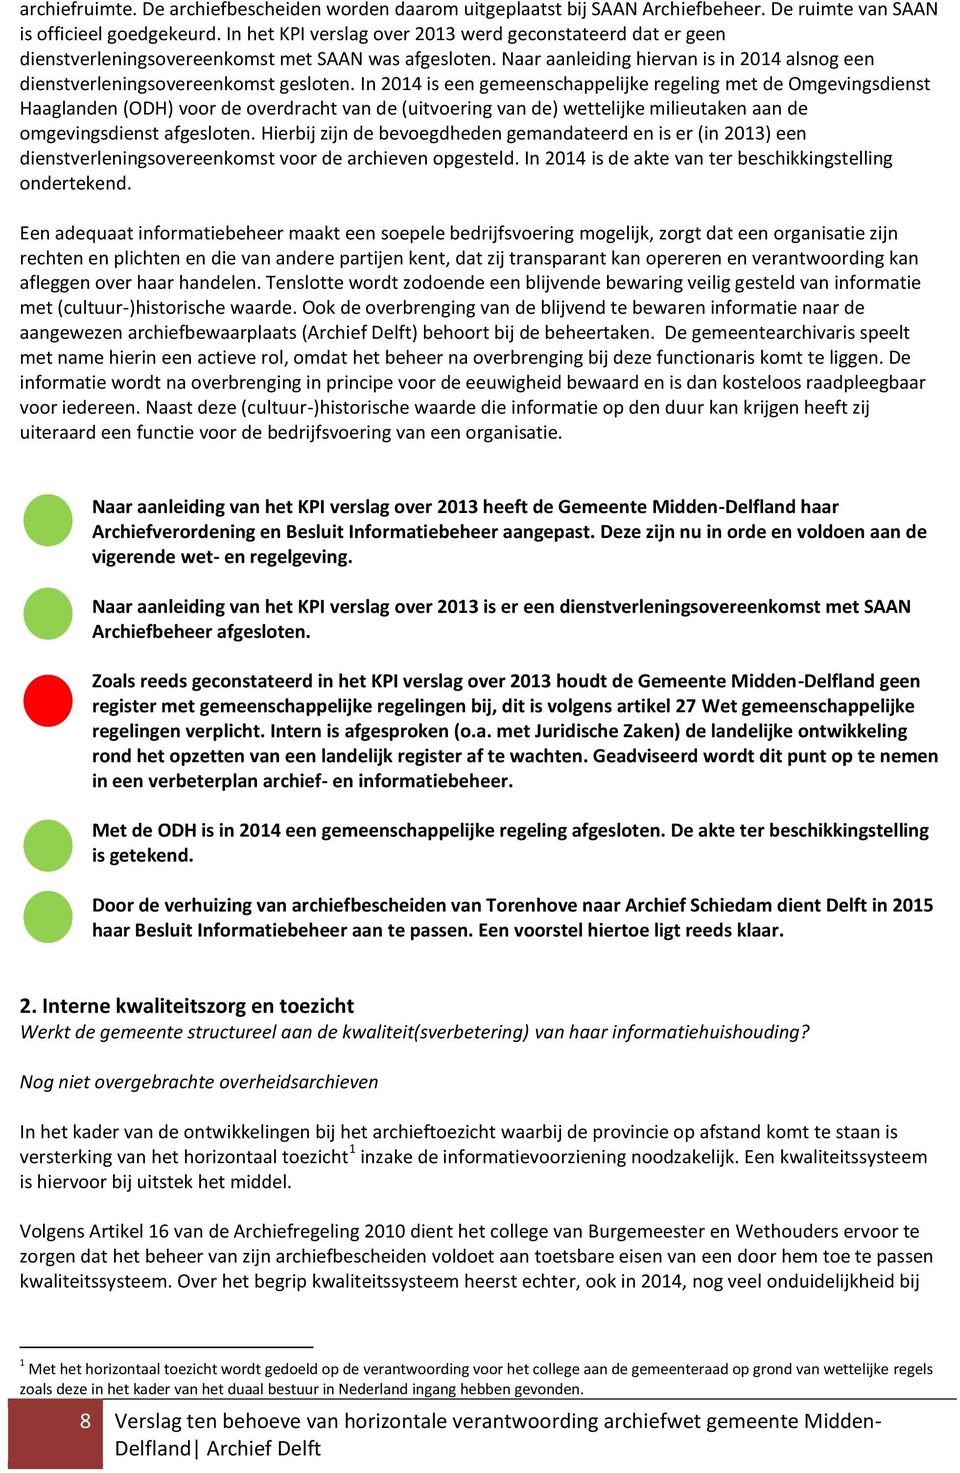 In 2014 is een gemeenschappelijke regeling met de Omgevingsdienst Haaglanden (ODH) voor de overdracht van de (uitvoering van de) wettelijke milieutaken aan de omgevingsdienst afgesloten.